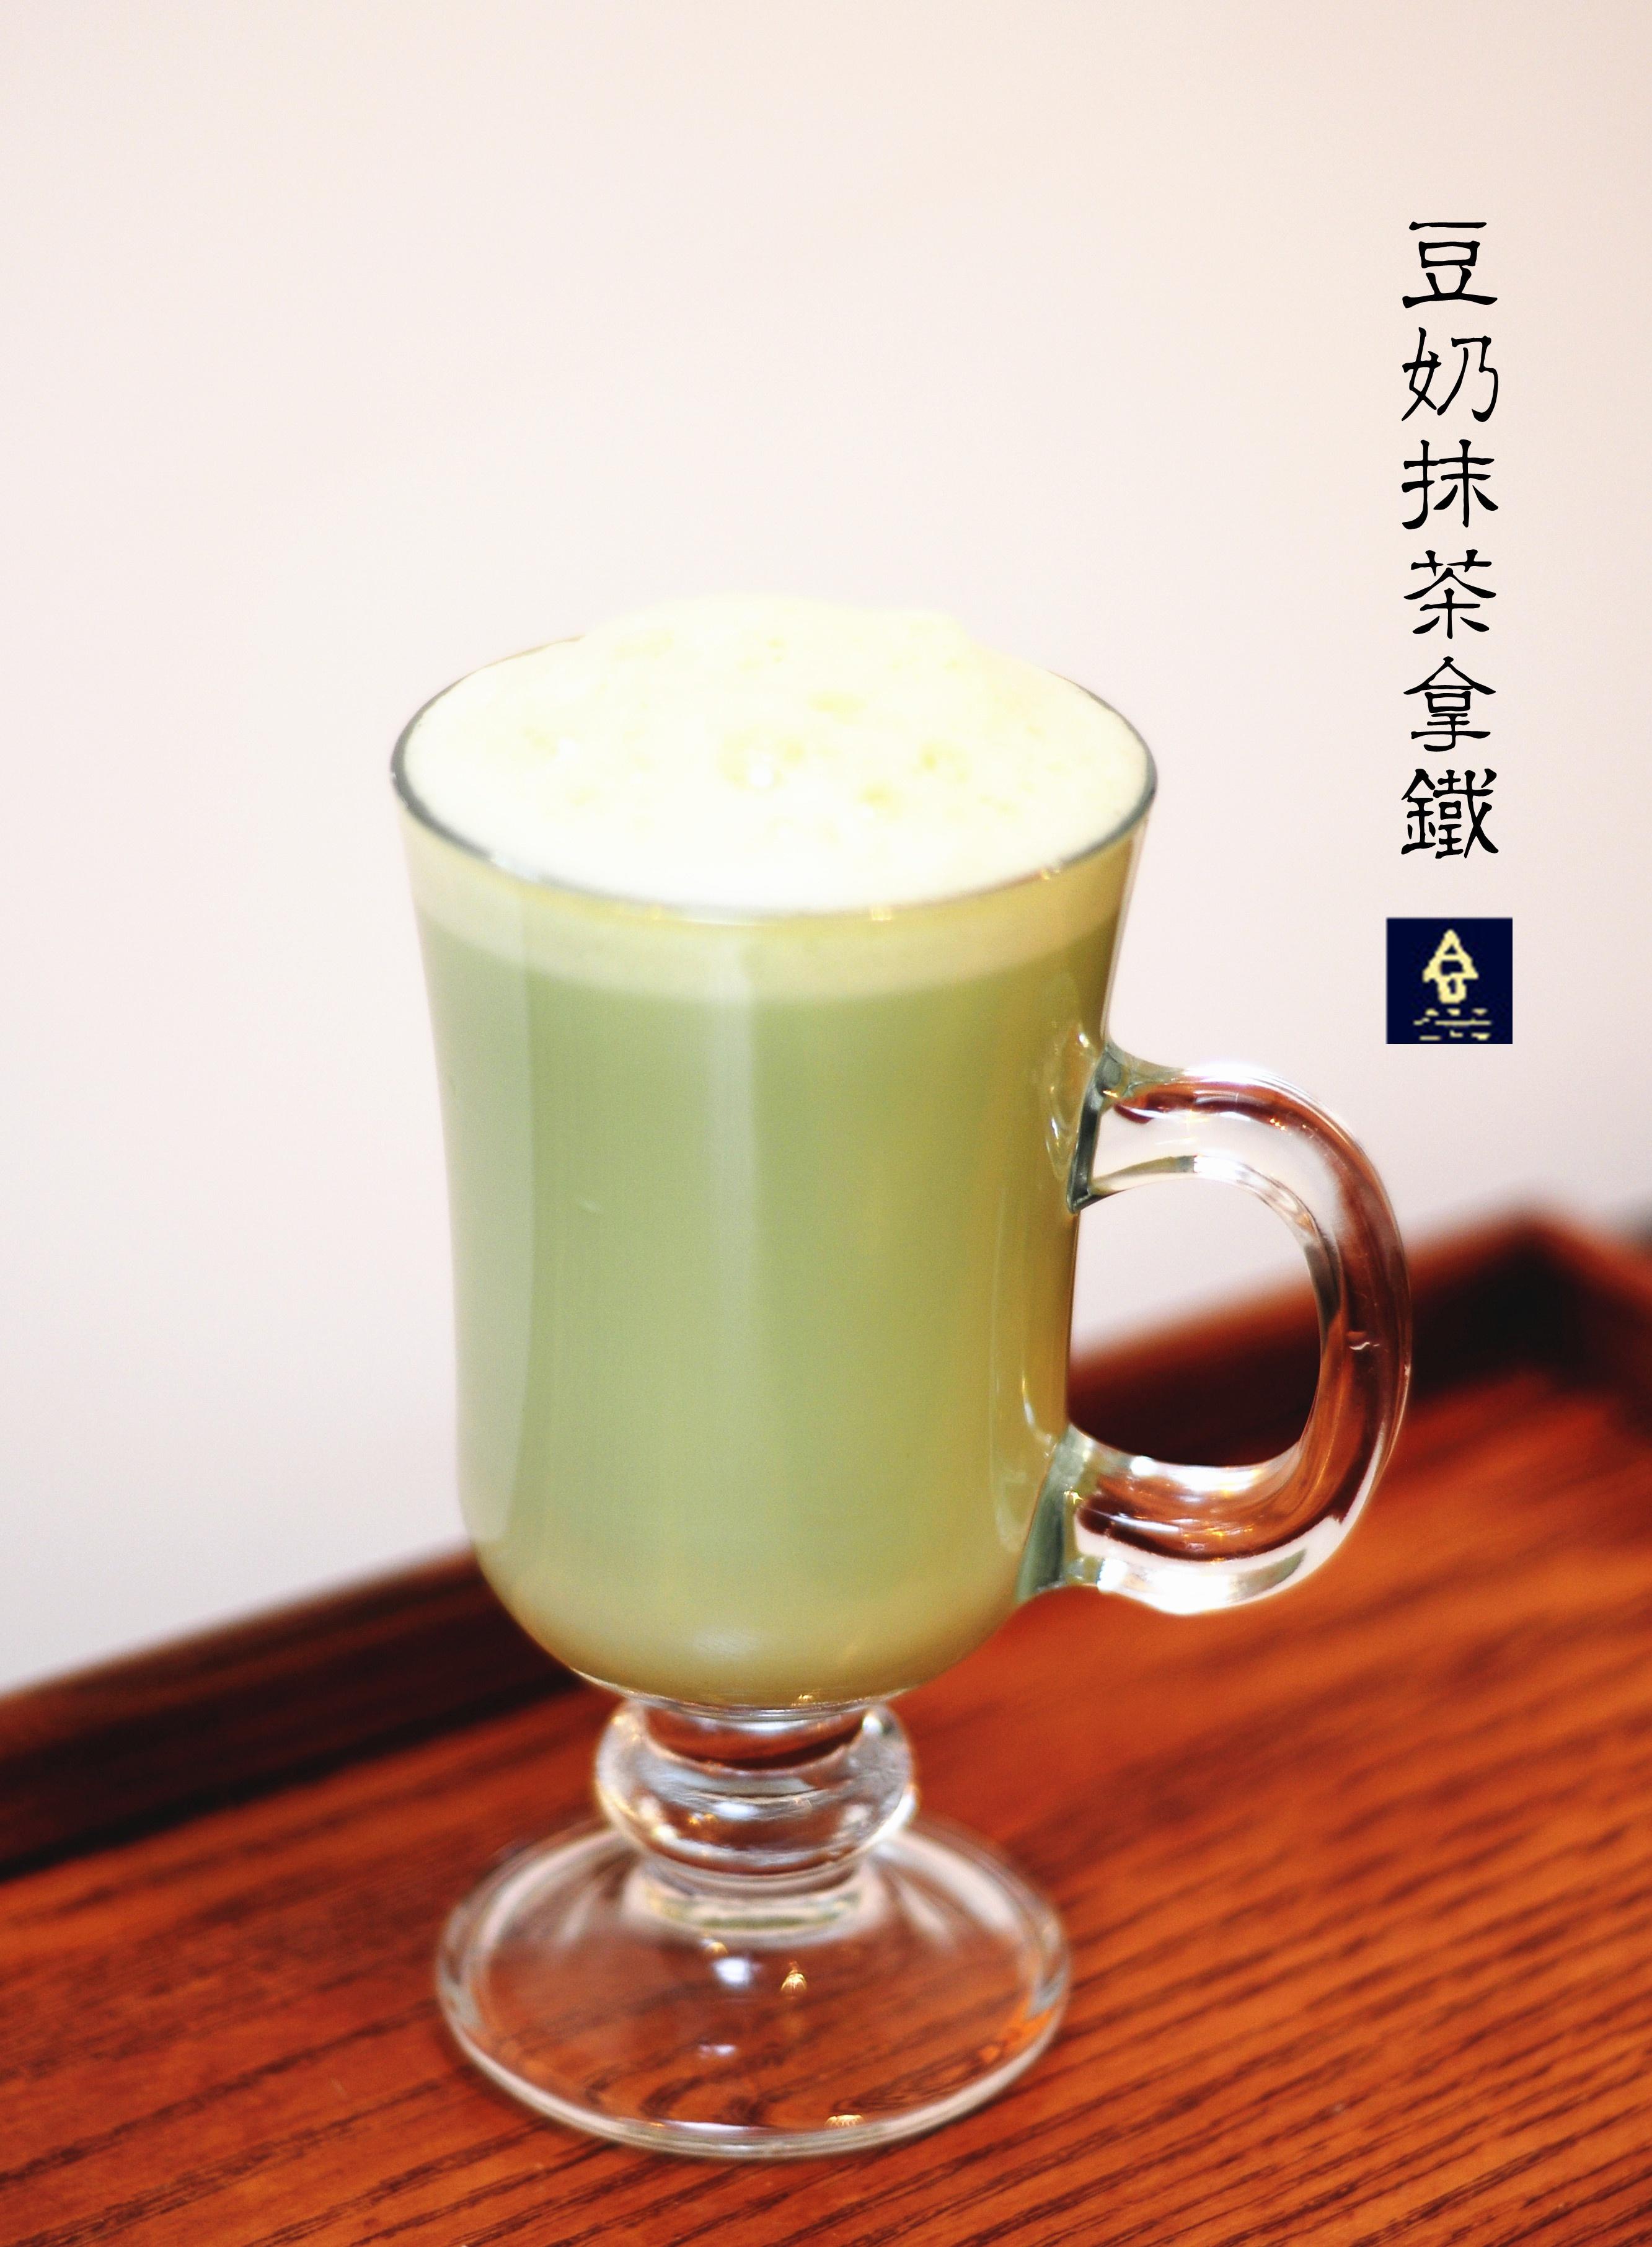 豆奶抹茶拿铁 (Soy Green Tea Latte)的做法